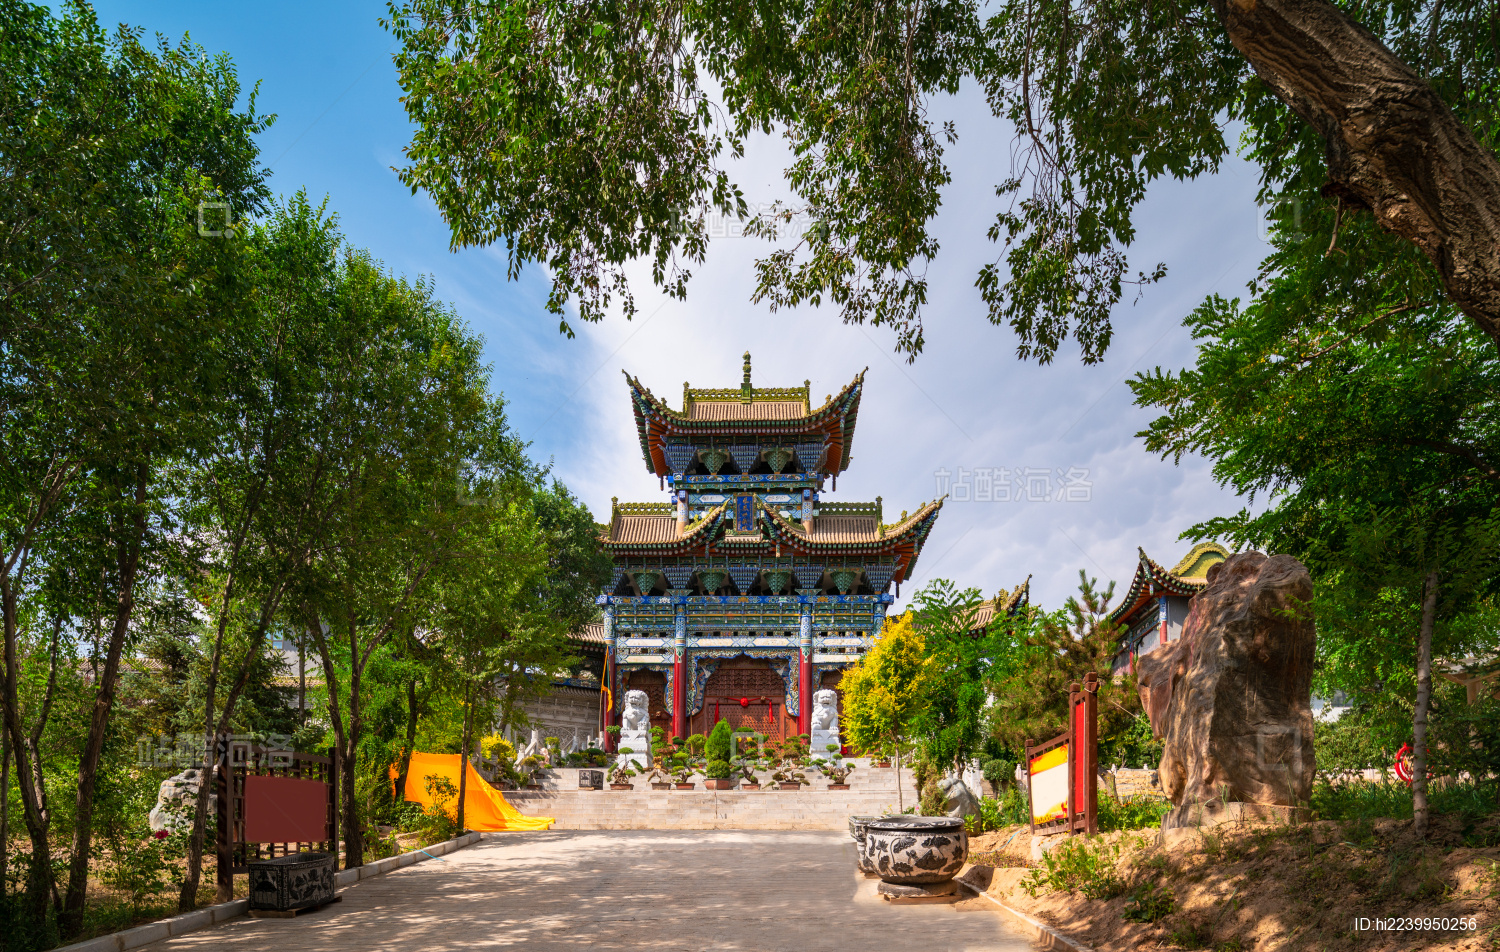 青海省 西宁市 北禅寺 是中国第二大悬空寺 可惜山上悬空寺没开放